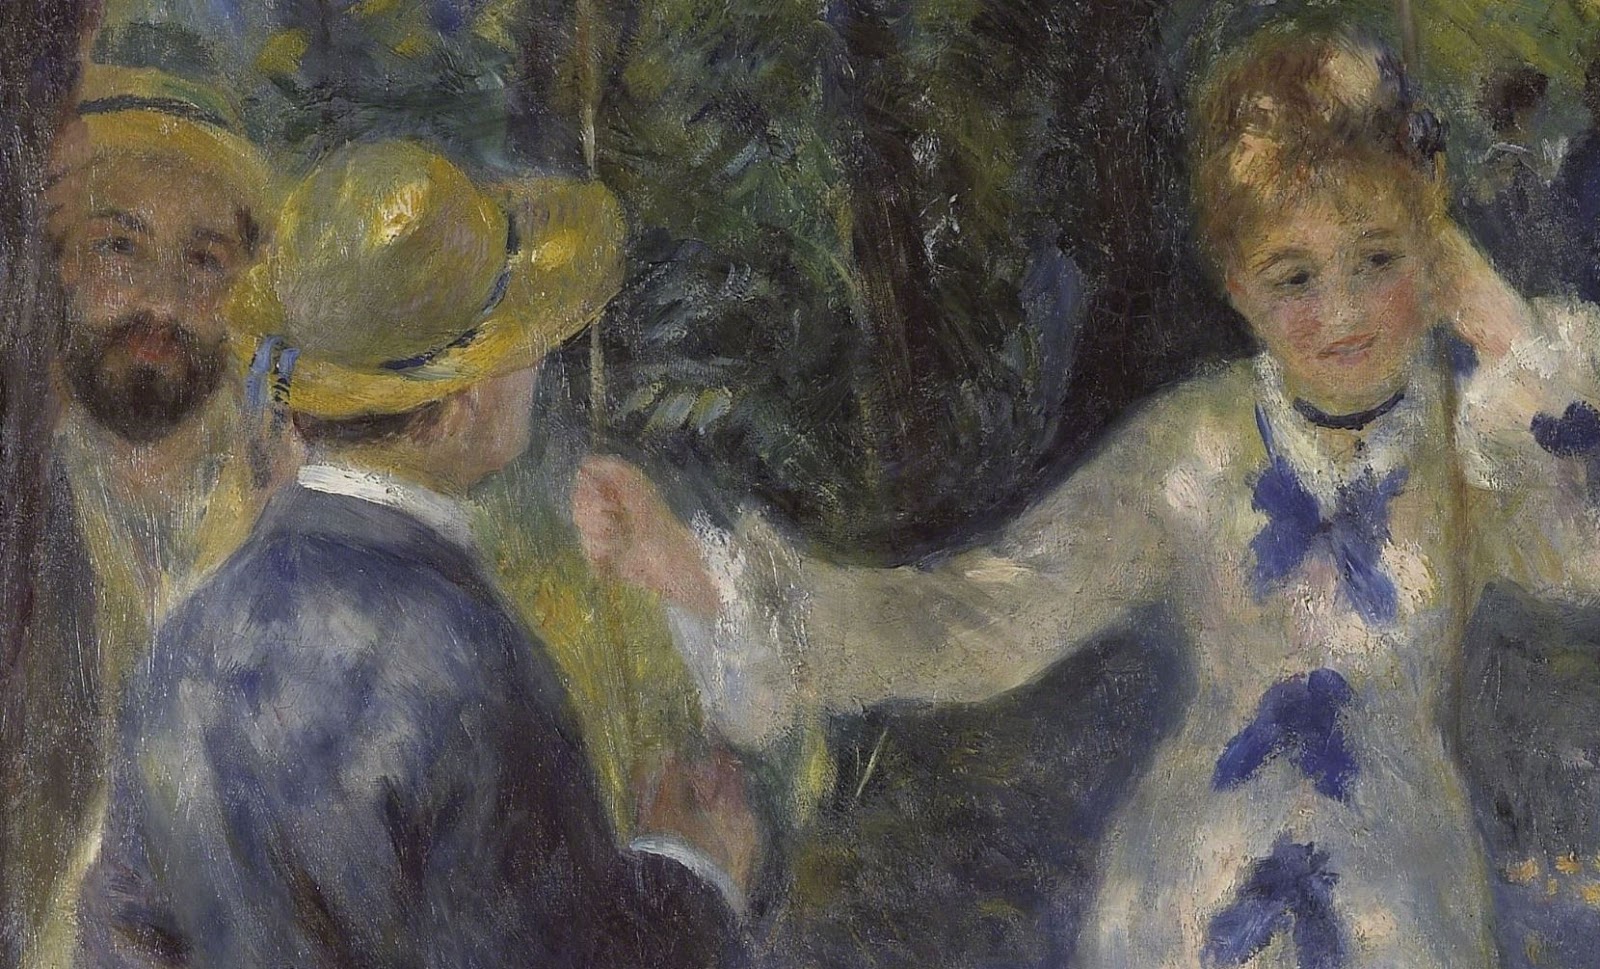 Pierre+Auguste+Renoir-1841-1-19 (690).JPG